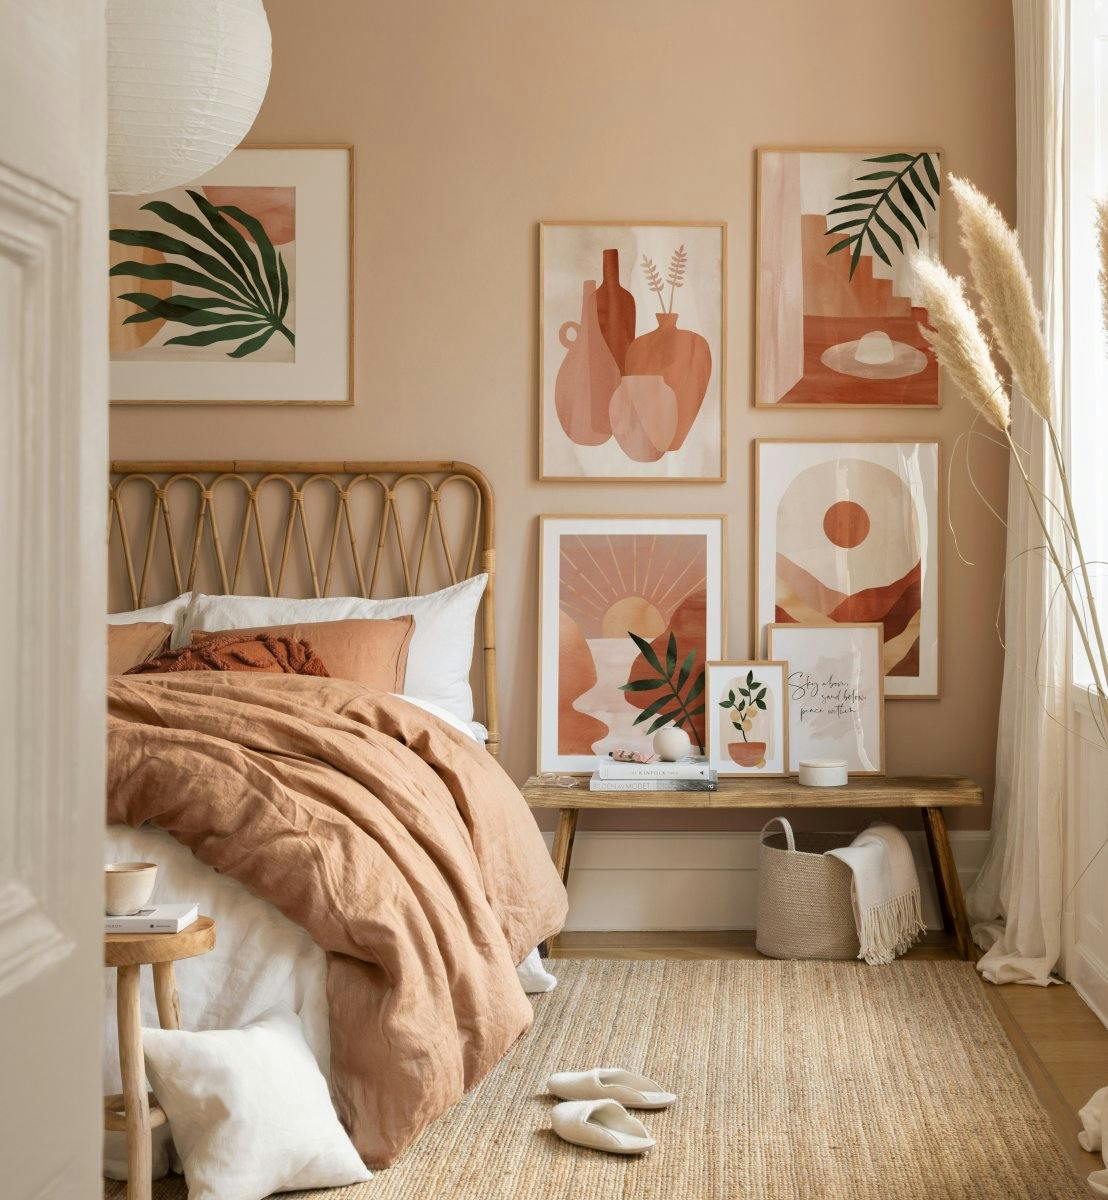 Illustrazioni in colori naturali per la camera da letto